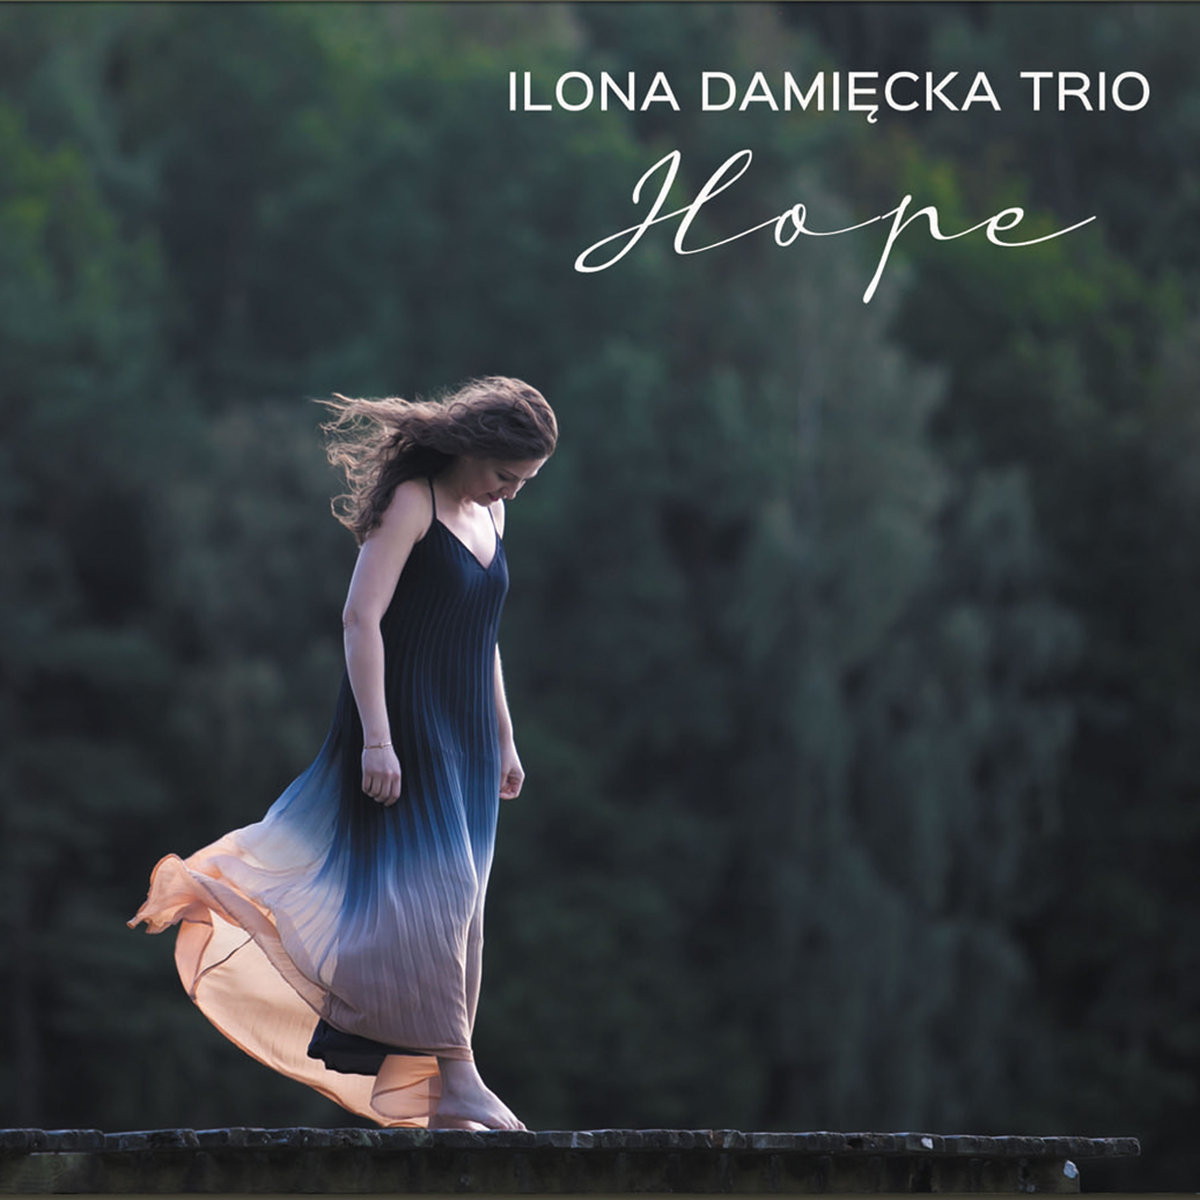 Damiécka Ilona Trio